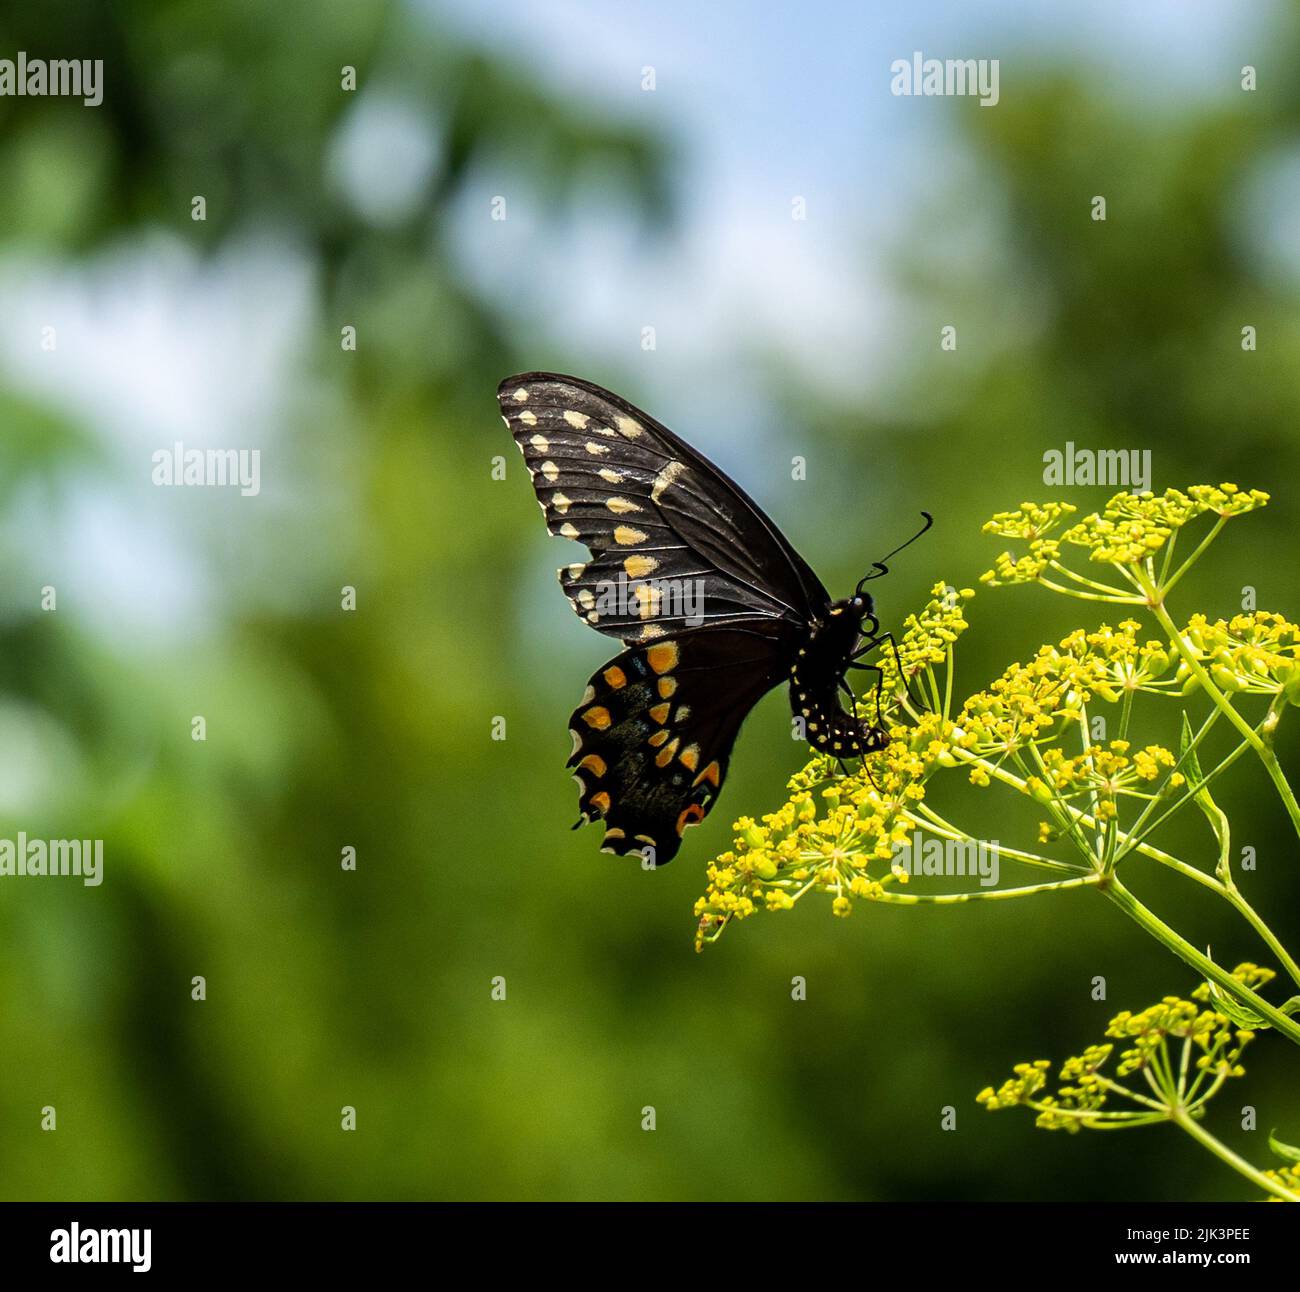 Primo piano di una farfalla nera a coda di rondine che raccoglie nettare dal fiore giallo su una pianta di pastinaca selvatica che sta crescendo in un campo. Foto Stock